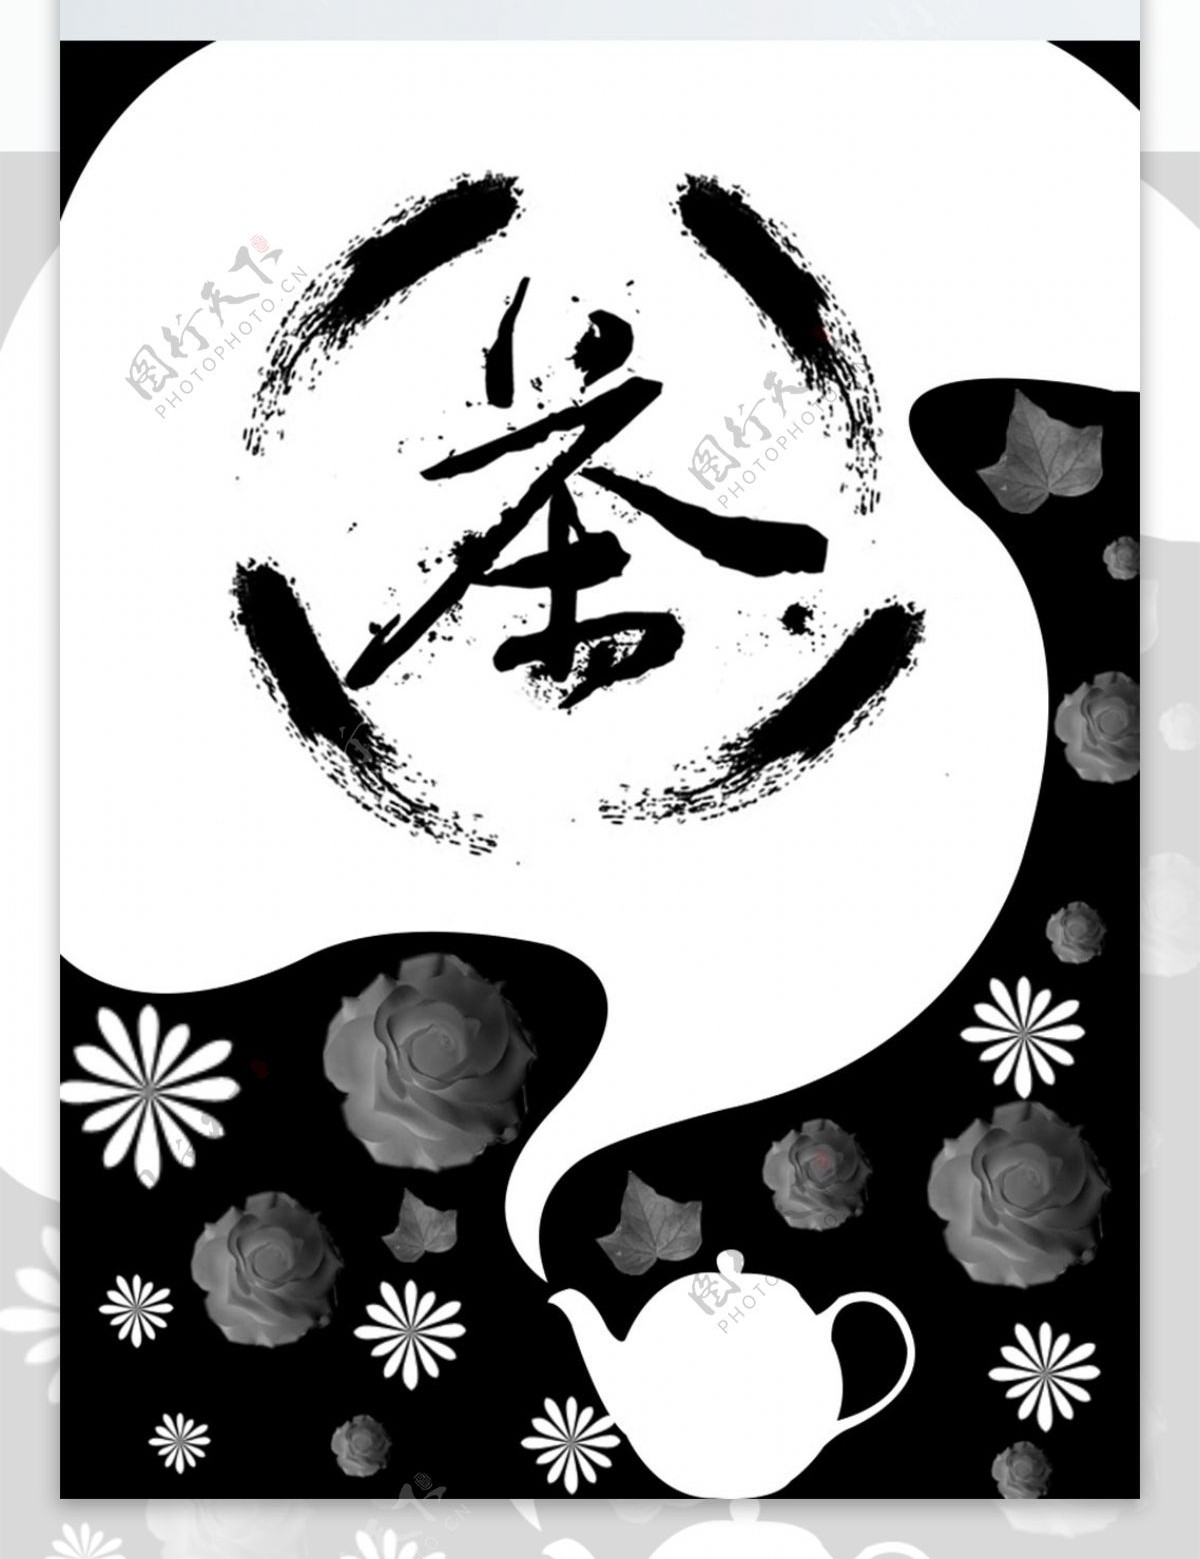 中式茶道简约中国文化主题字体装饰画